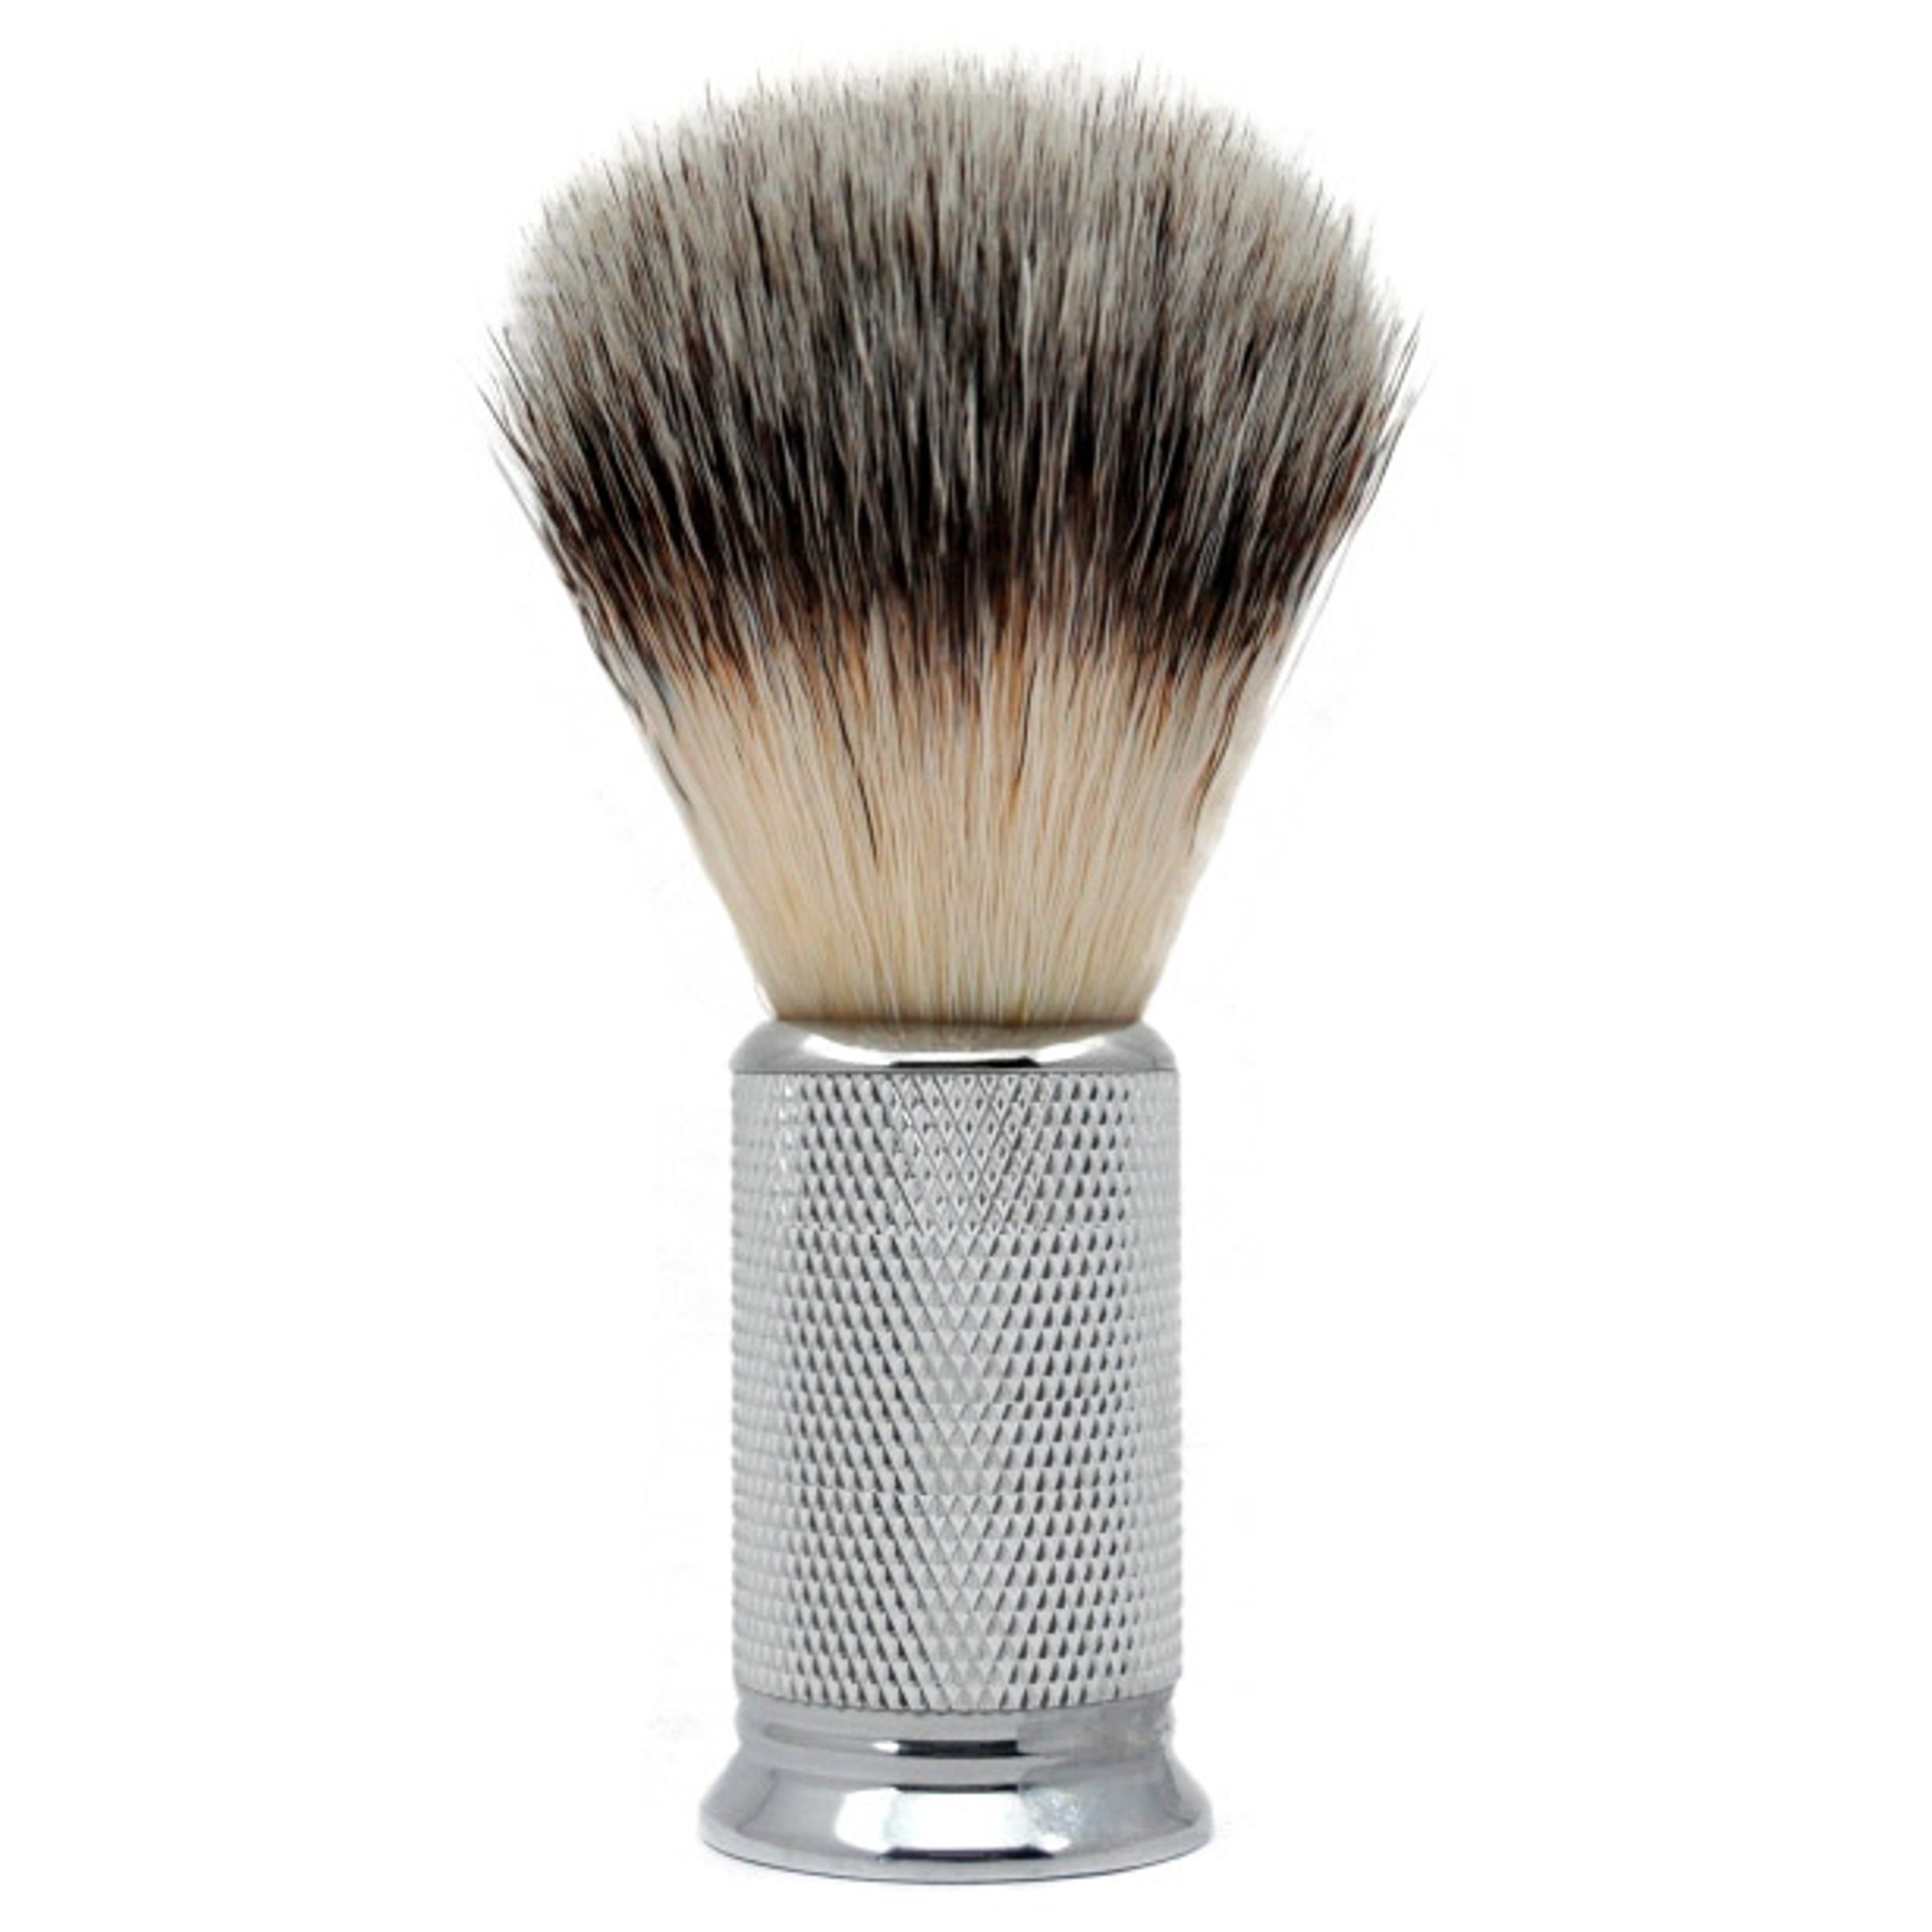 Steel Synthetic Shaving Brush